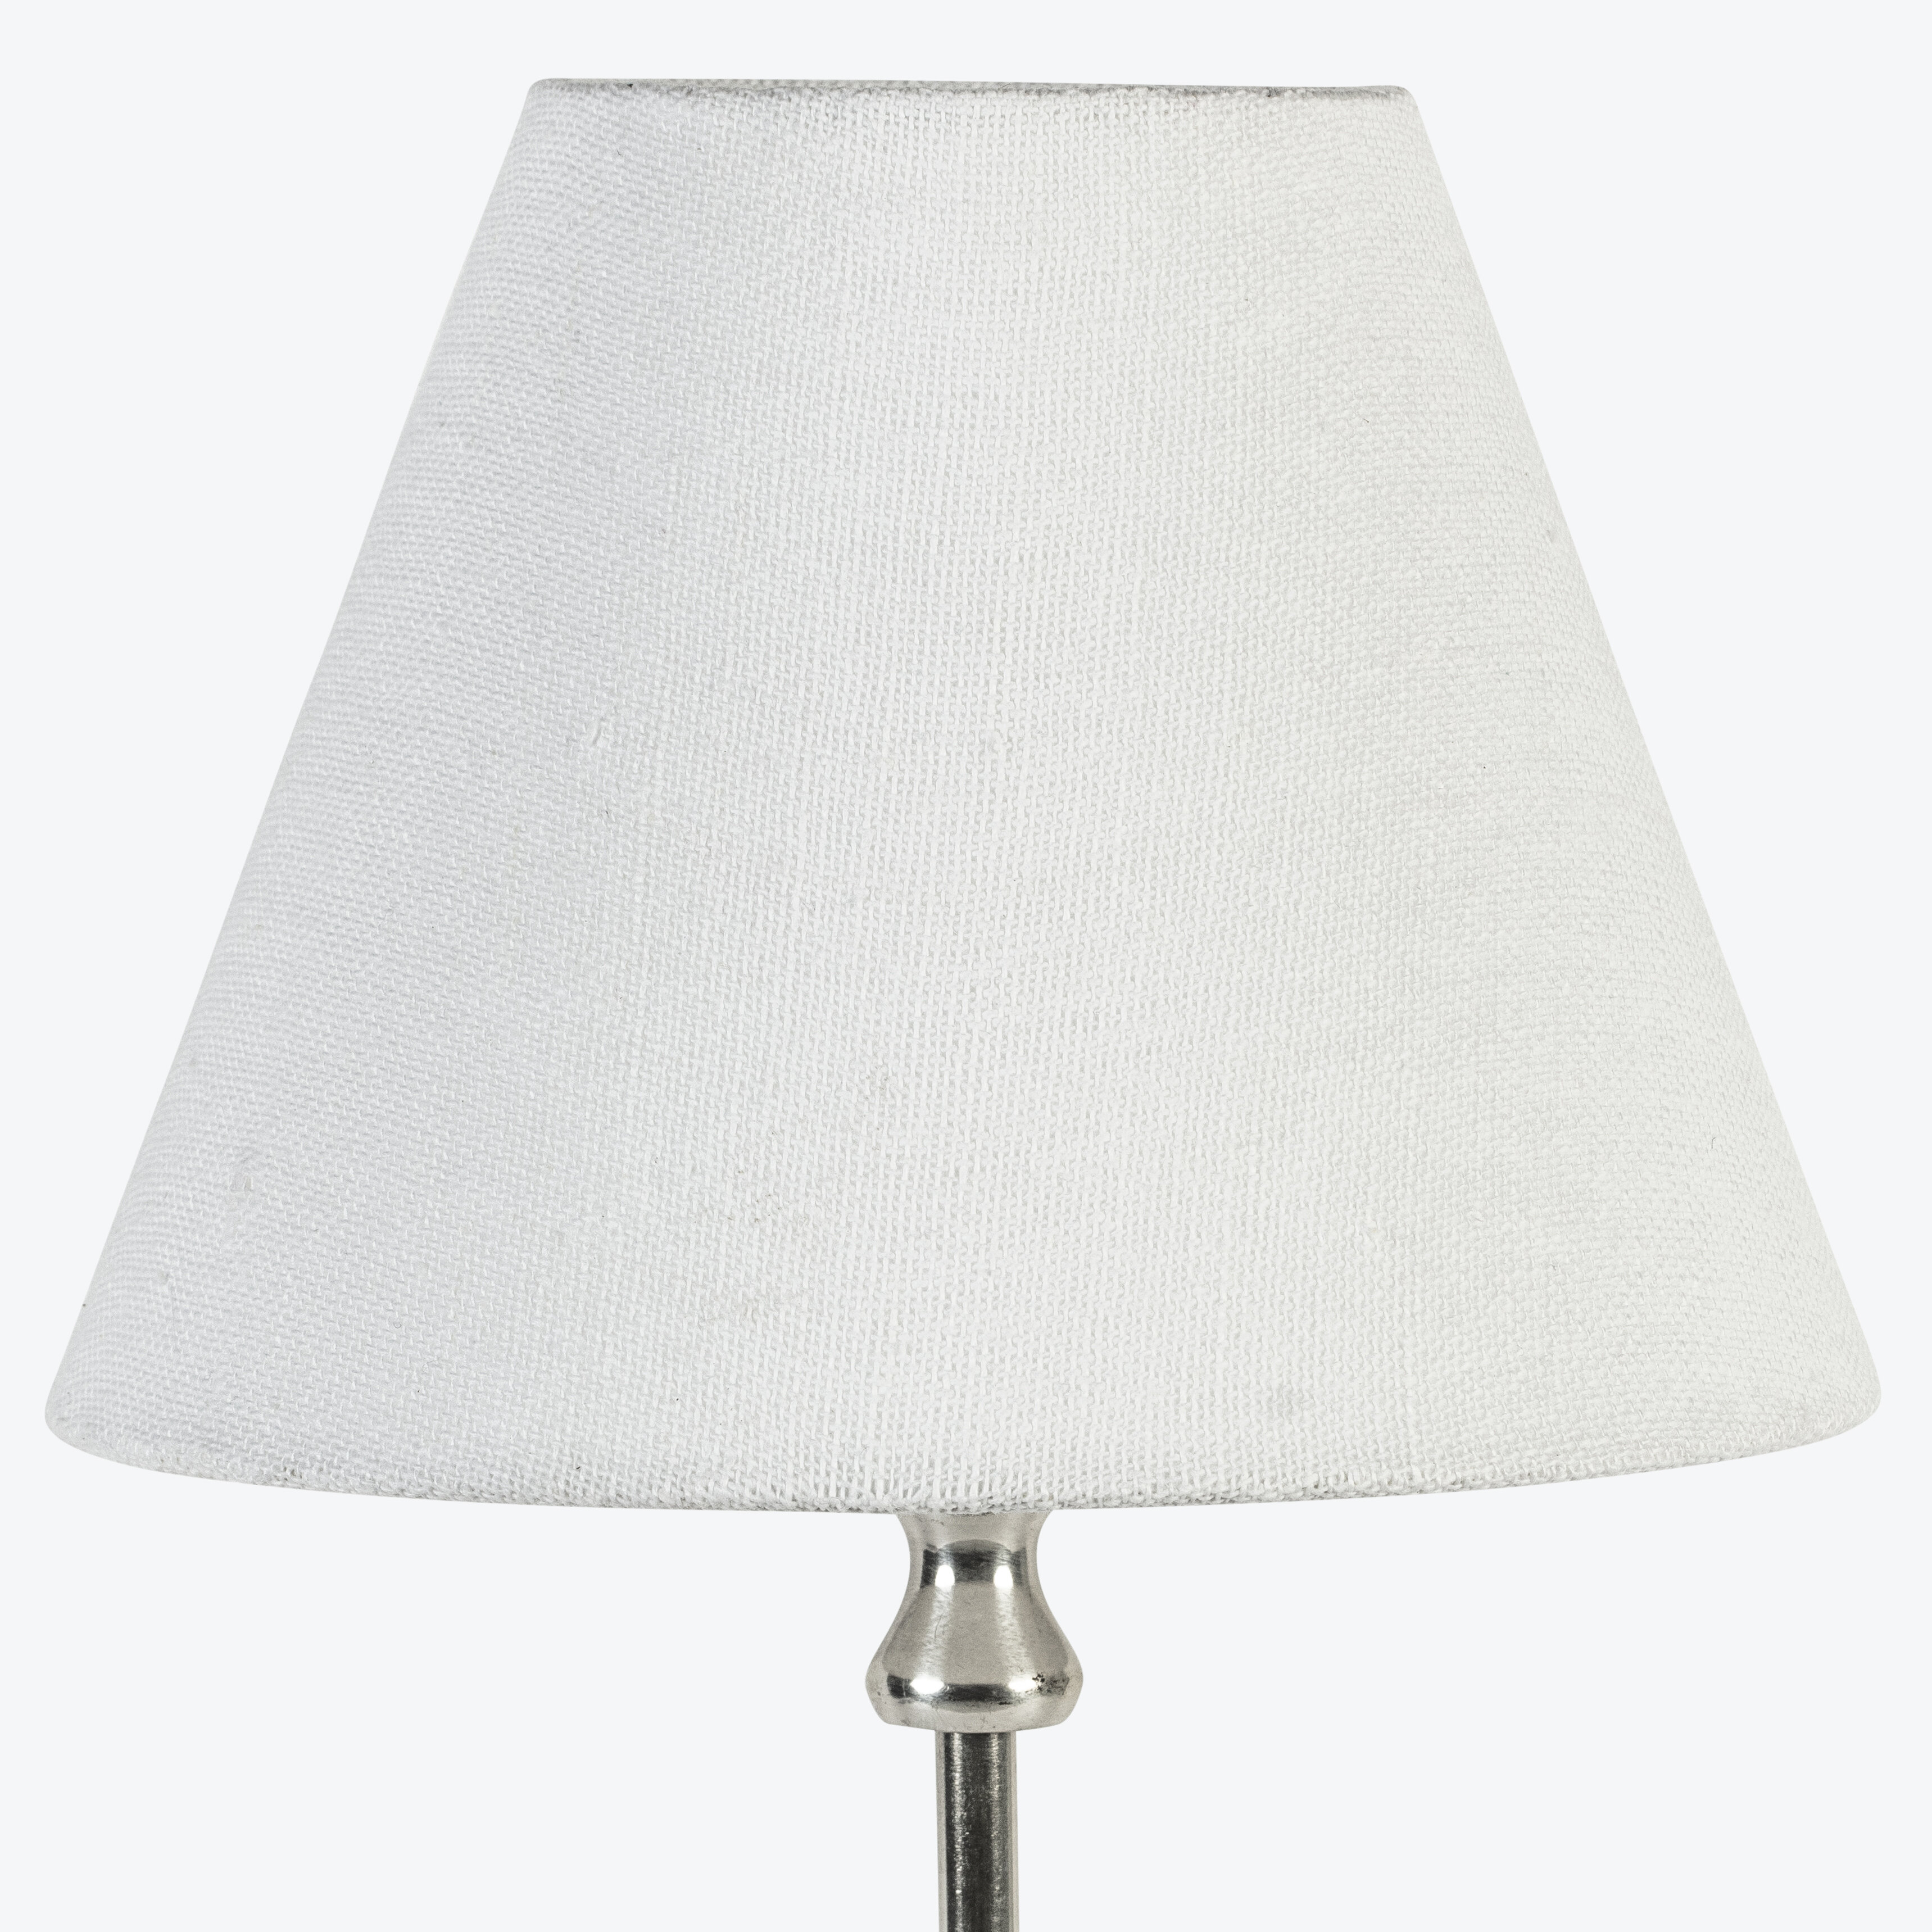 IKEA - NYMÕ og Õverud lampeskjermer i hvitt og kobber har en